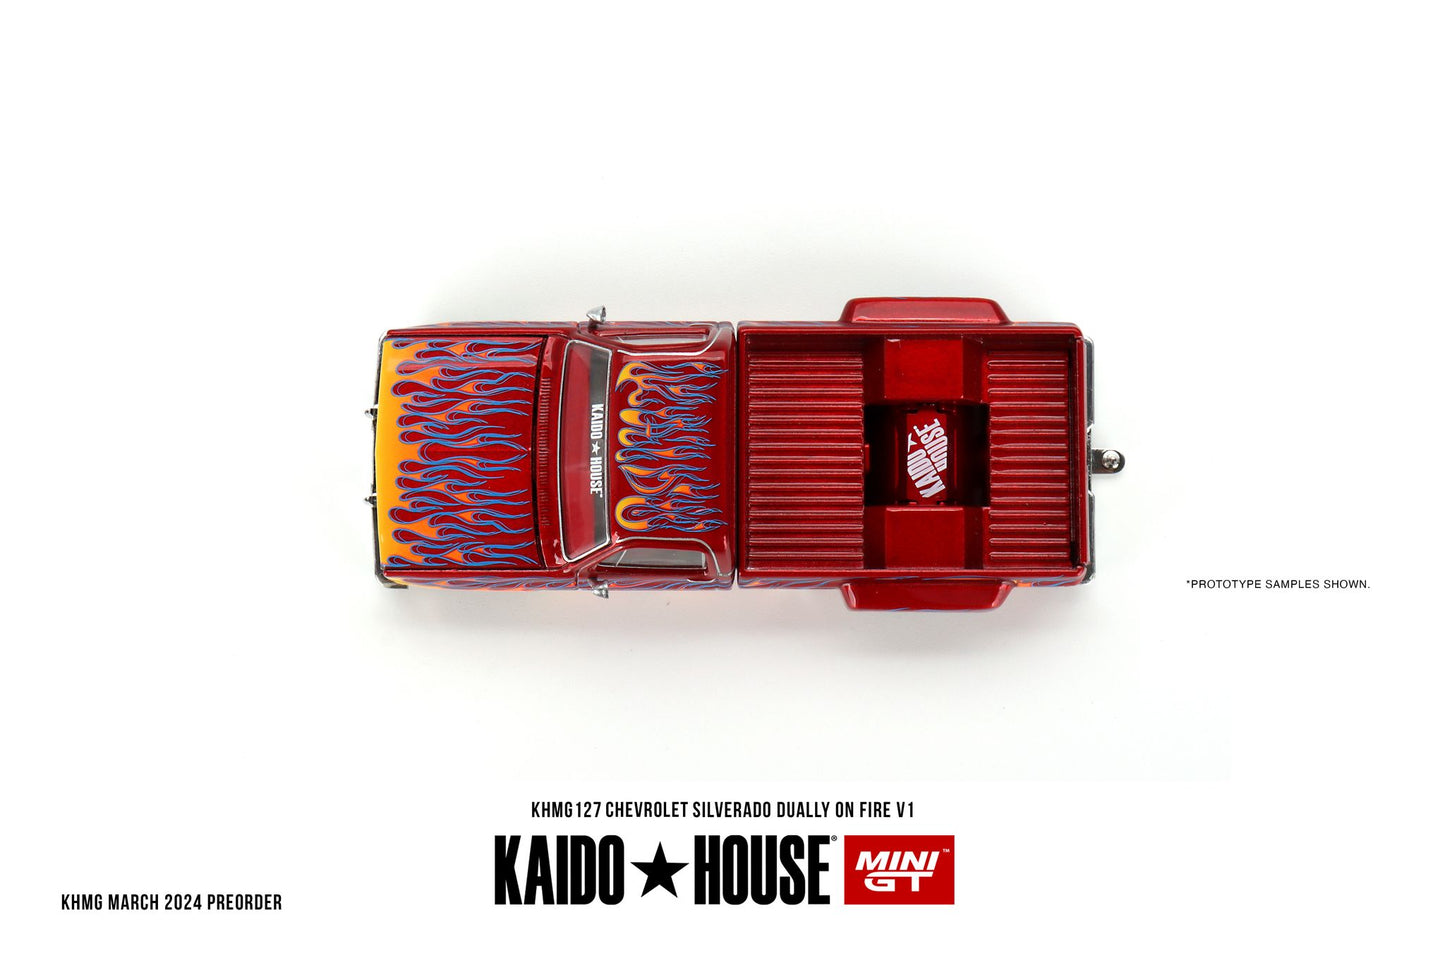 Mini GT x Kaido House 1983 Chevy Silverado Dually on Fire V1